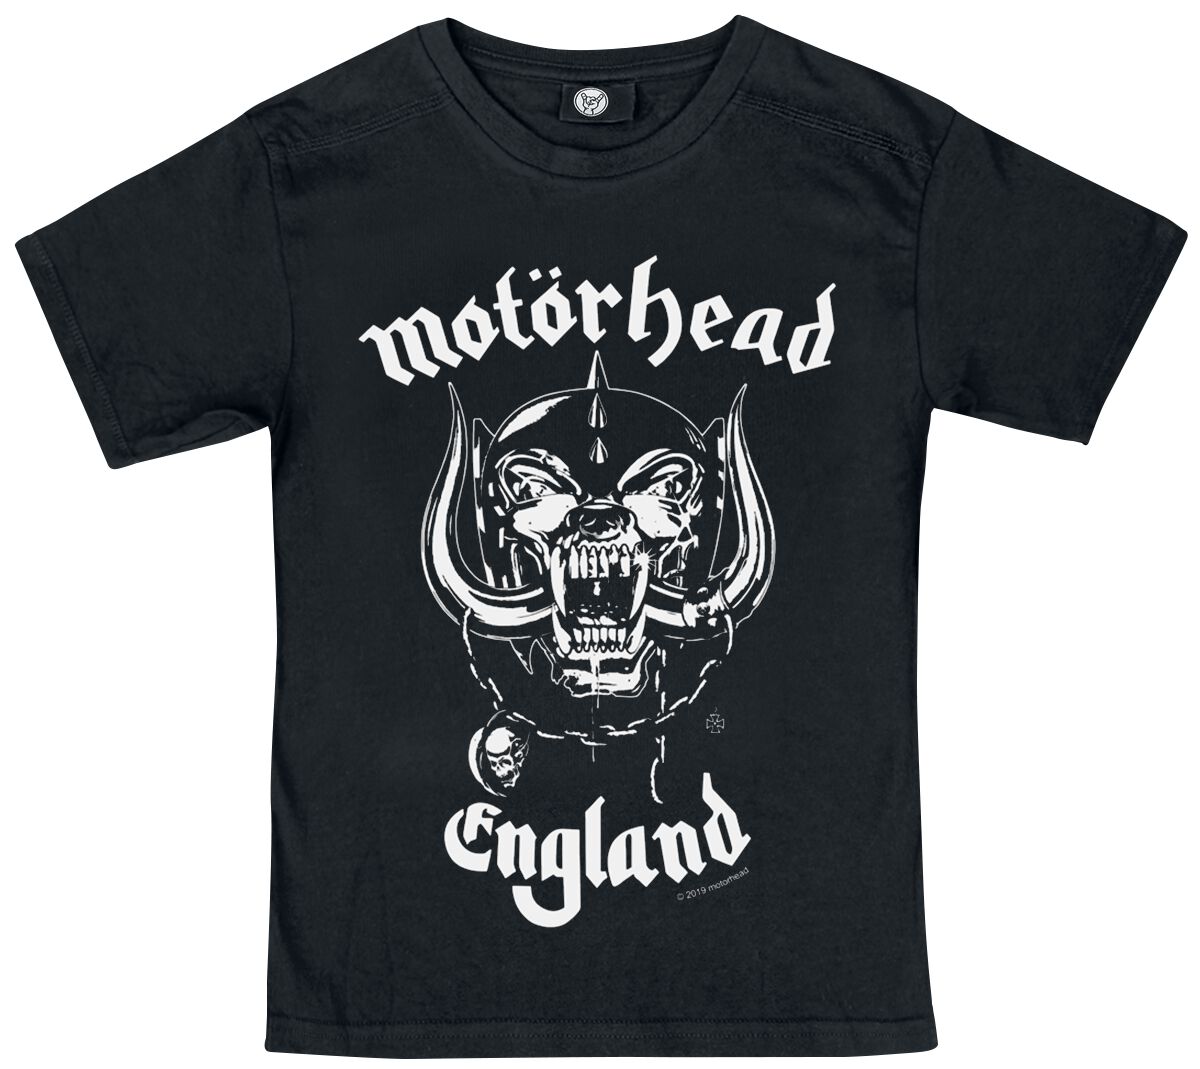 Motörhead T-Shirt für Kinder - Metal-Kids - England - für Mädchen & Jungen - schwarz  - Lizenziertes Merchandise!